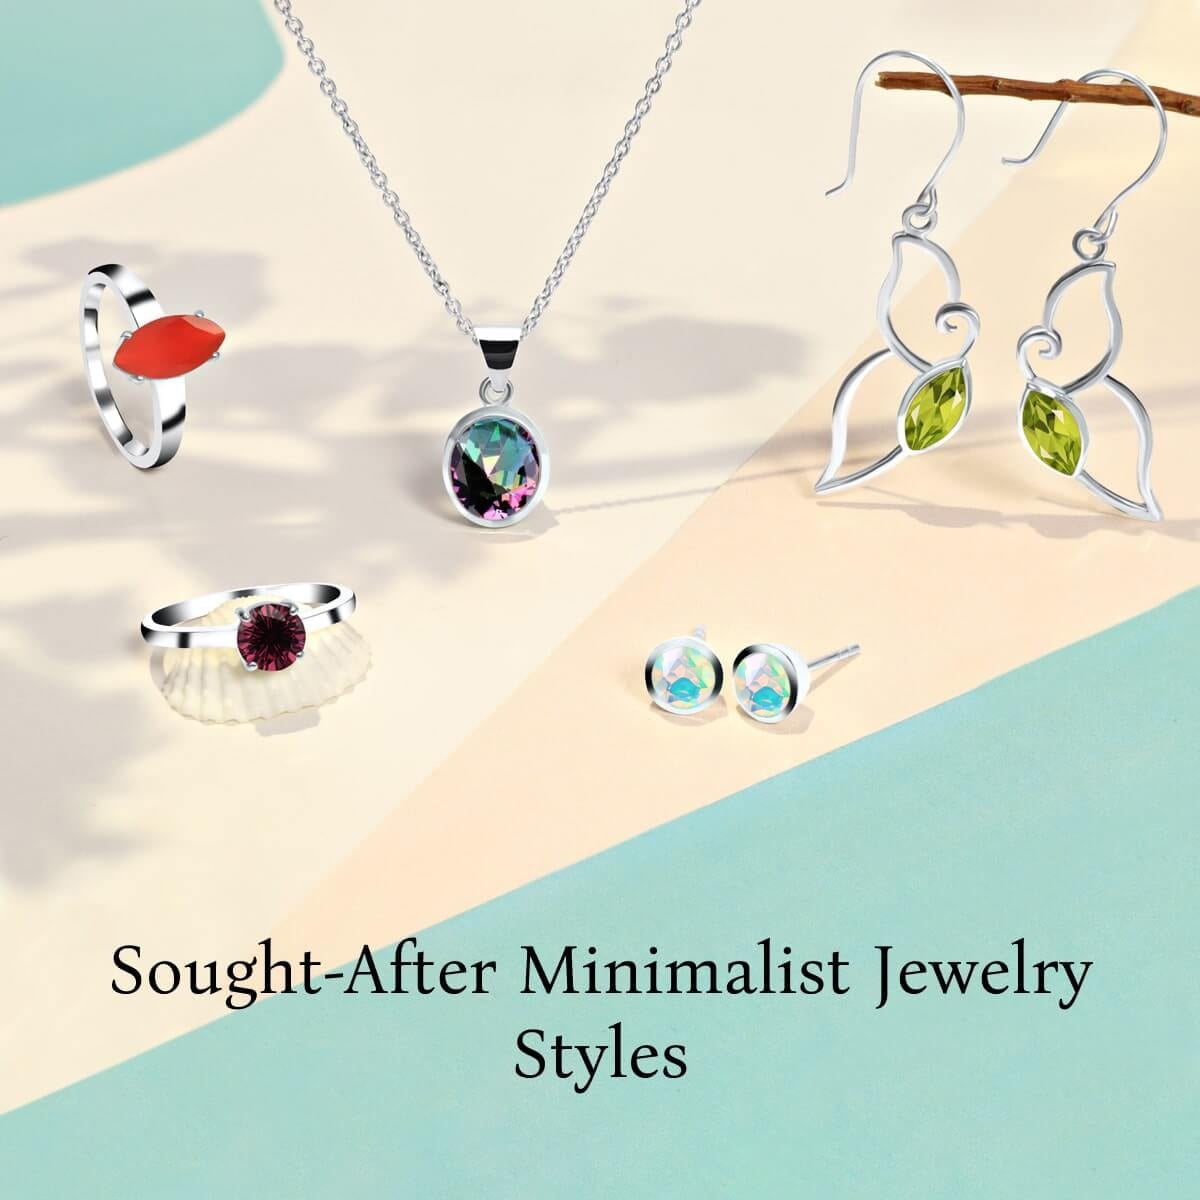 Popular Styles of Minimalist Jewelry